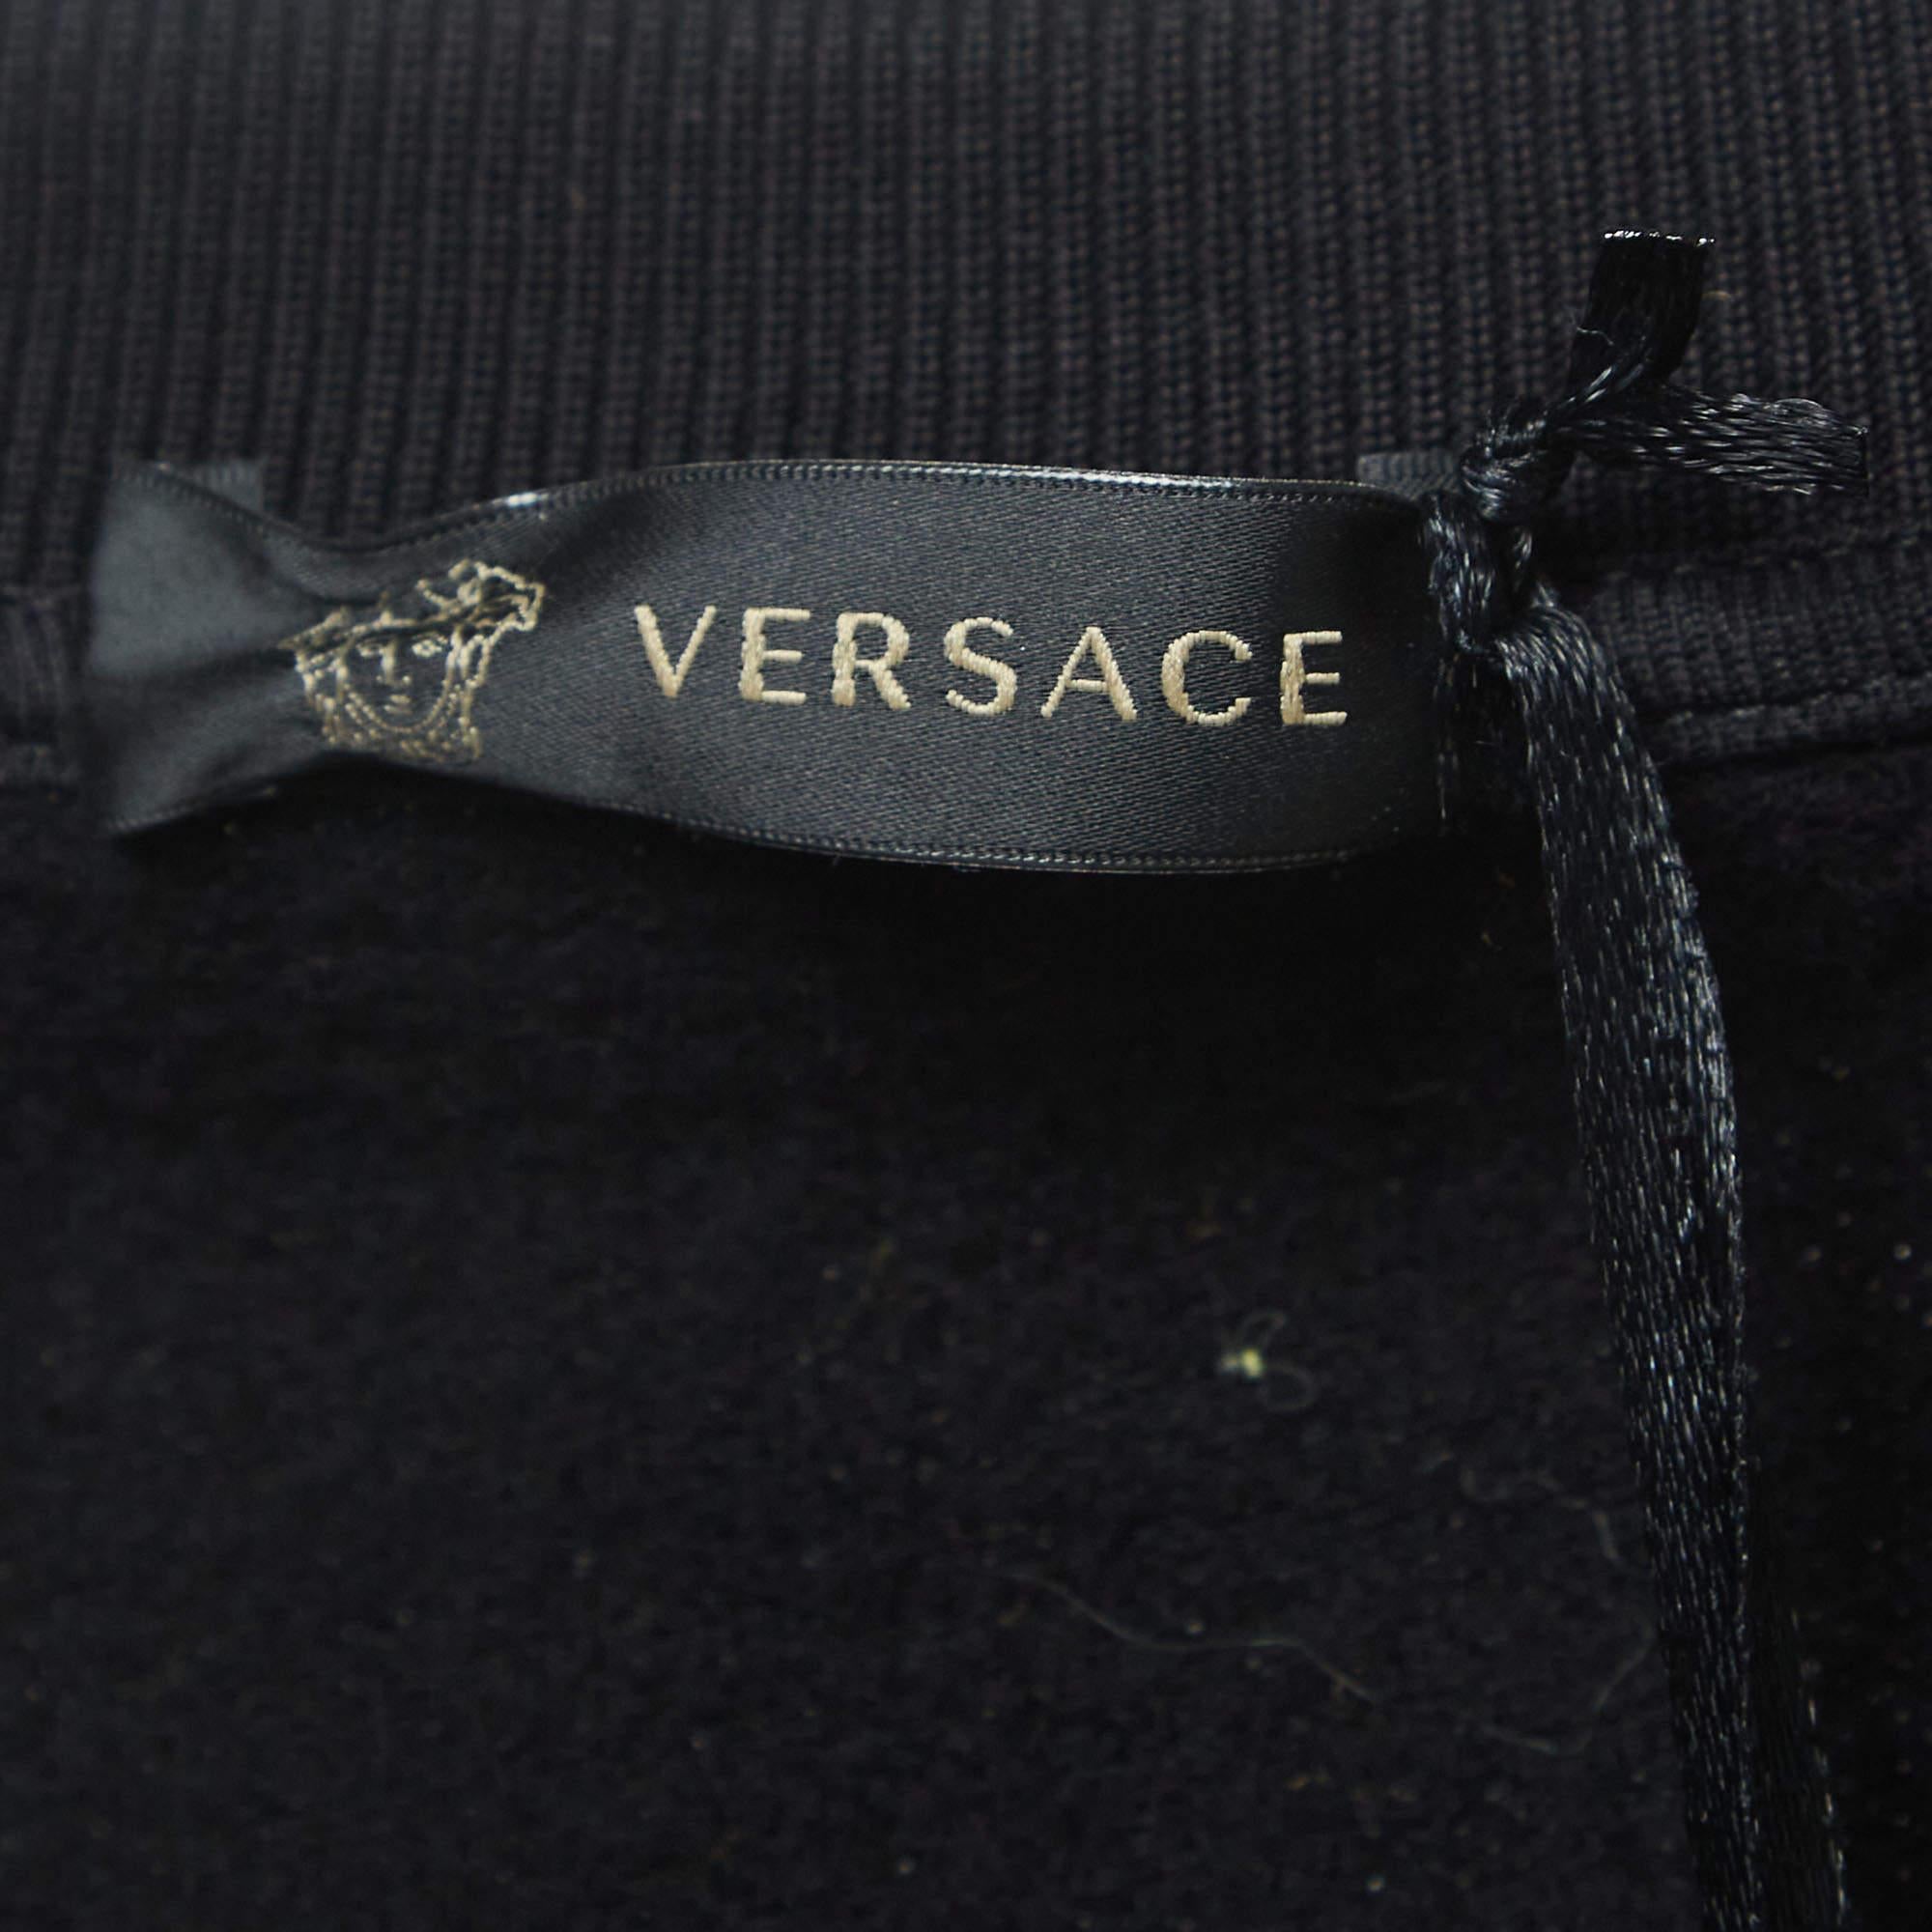 Versace Pillow Talk Black Leopard Print Applique Cotton Sweatshirt L For Sale 2